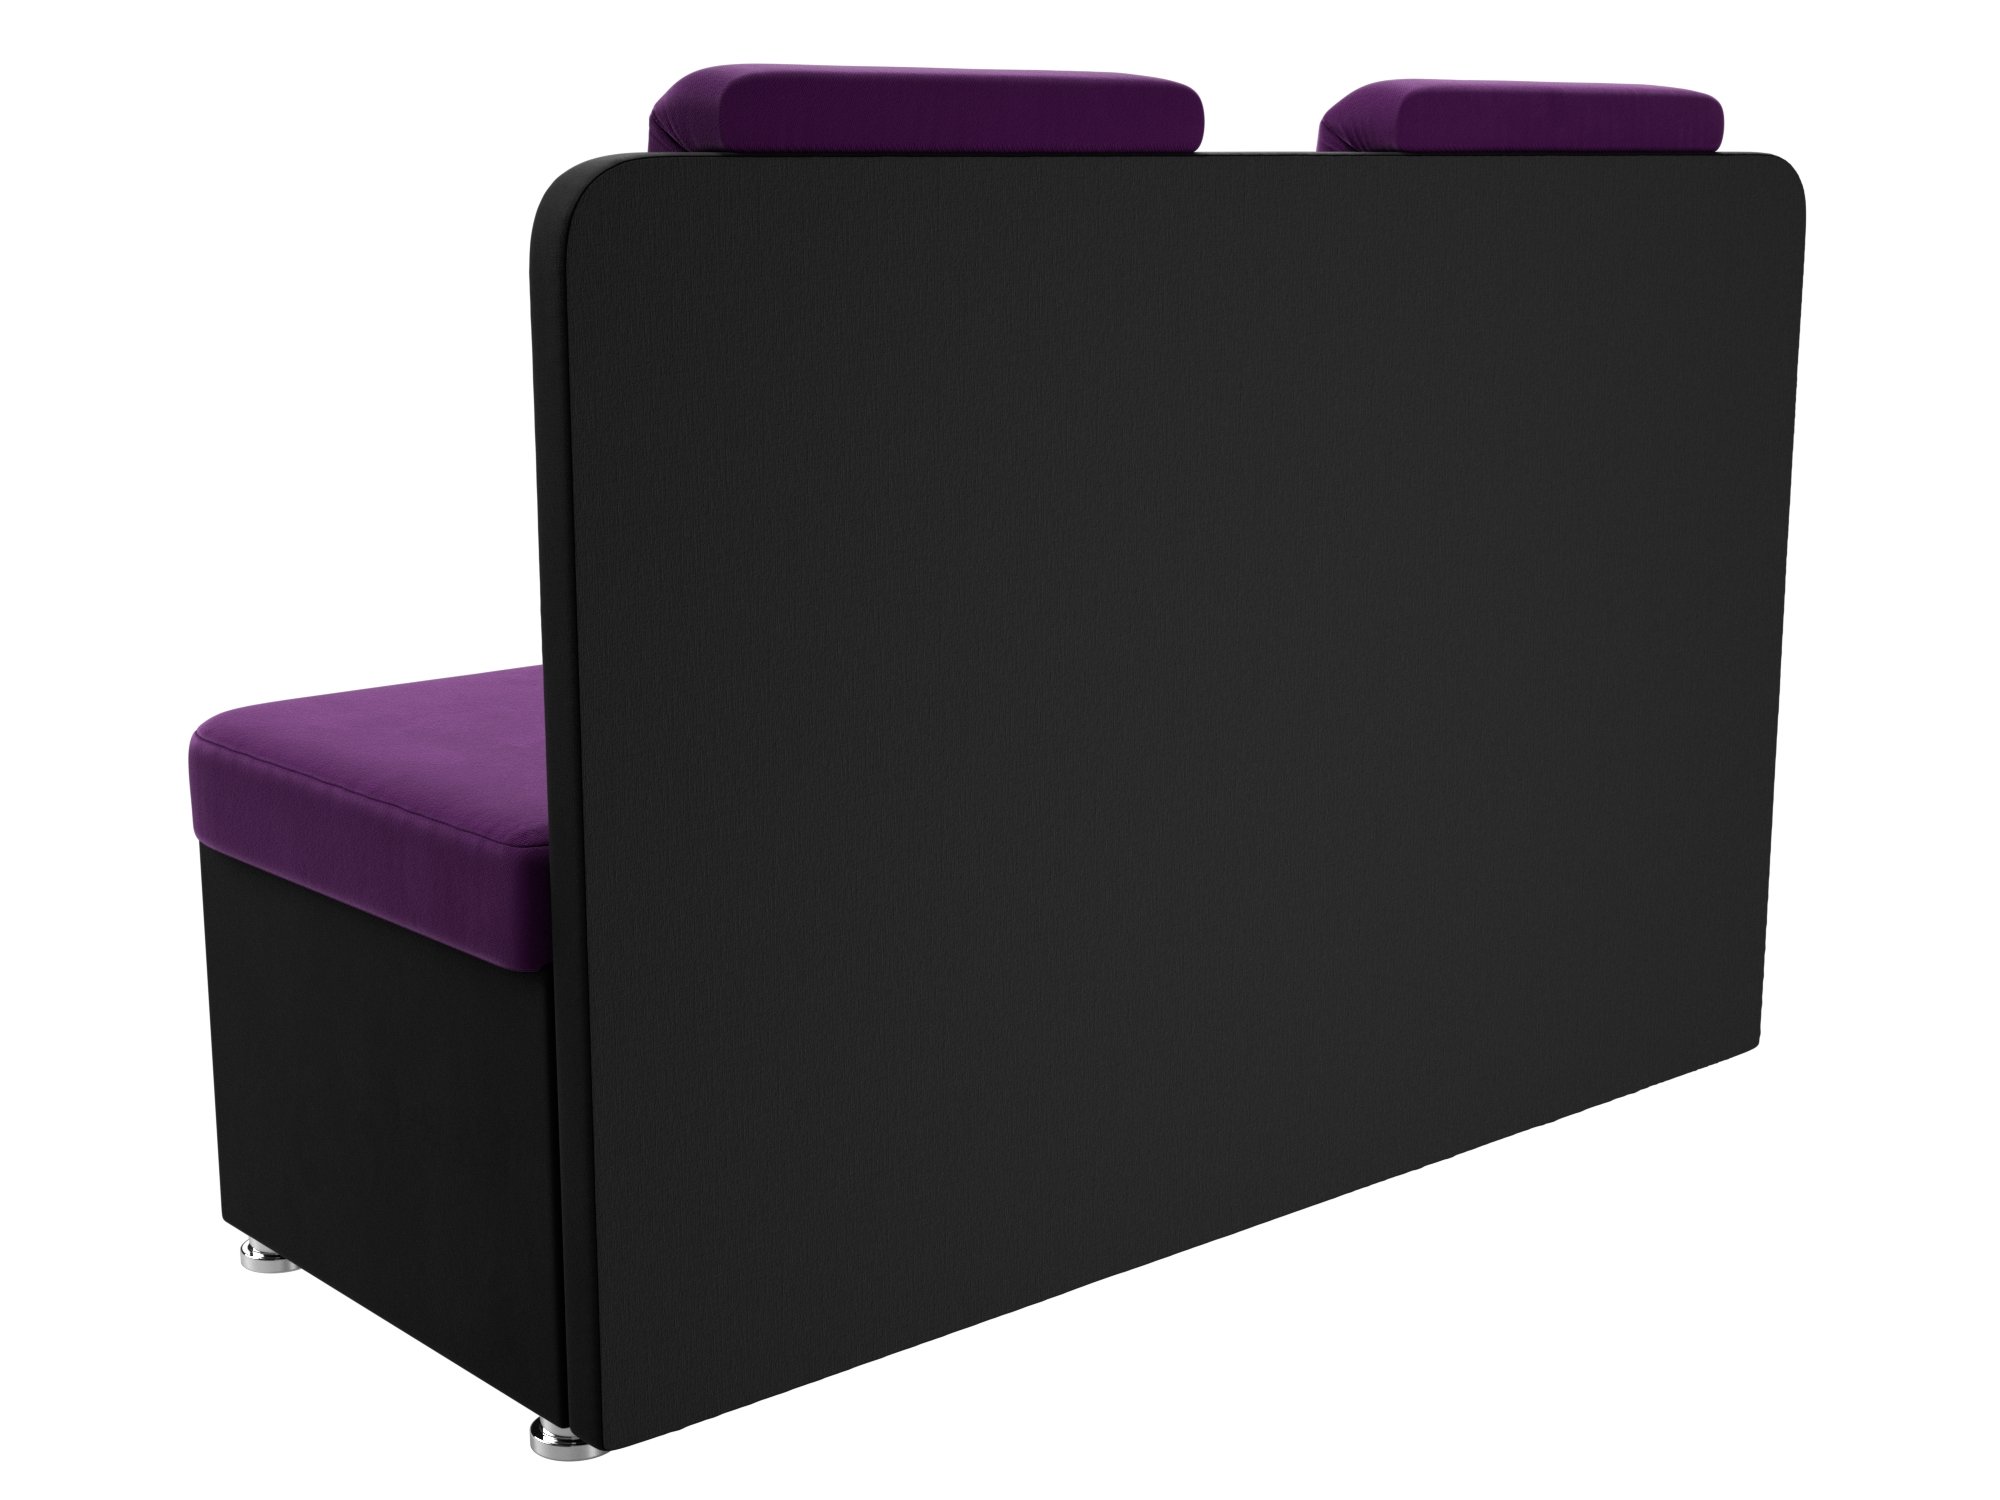 Кухонный прямой диван Маккон 2-х местный Фиолетовый\Черный